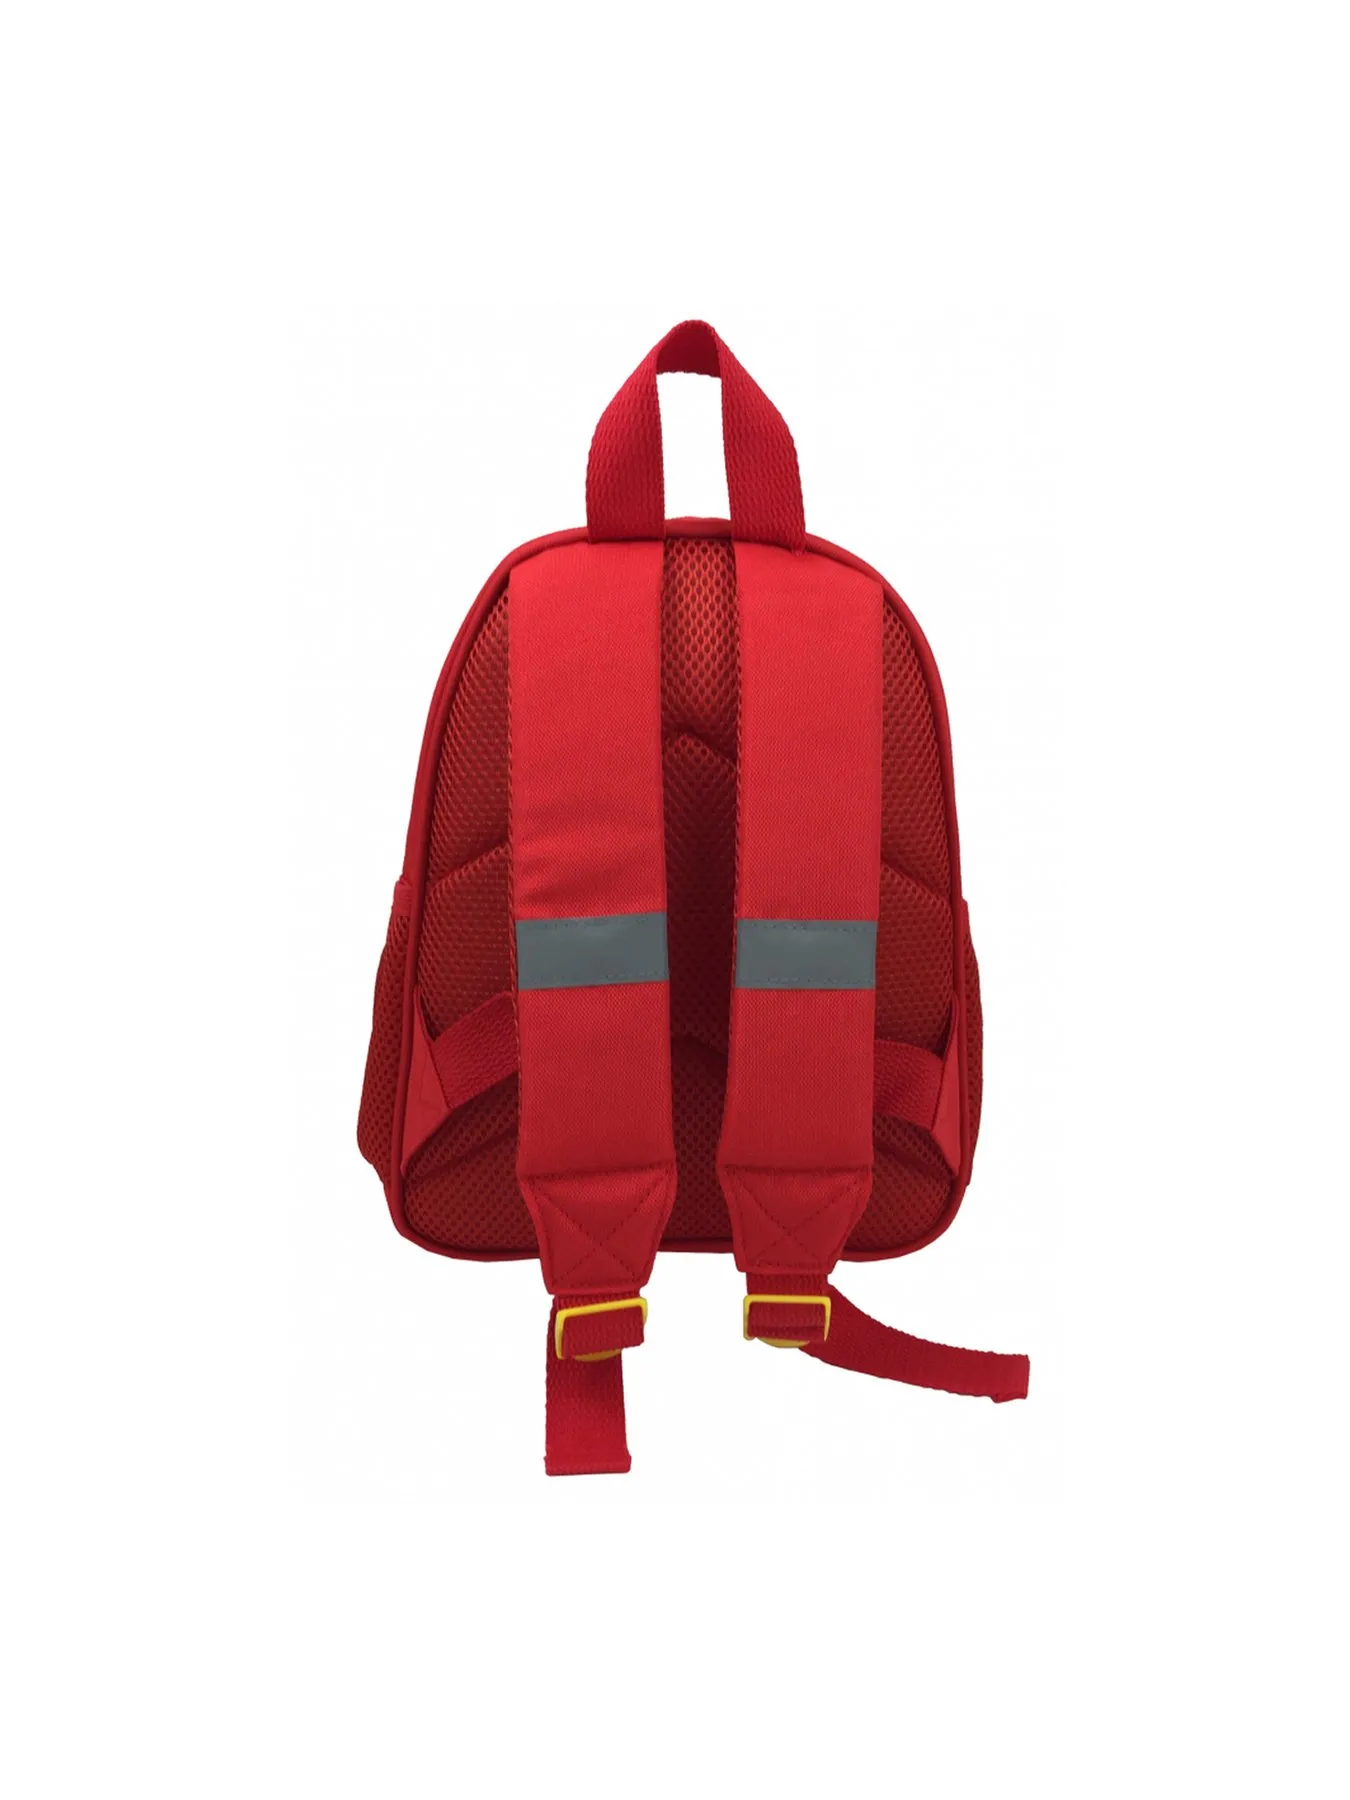 Backpack Pippi Longstocking Red/Yellow - Astrid Lindgren